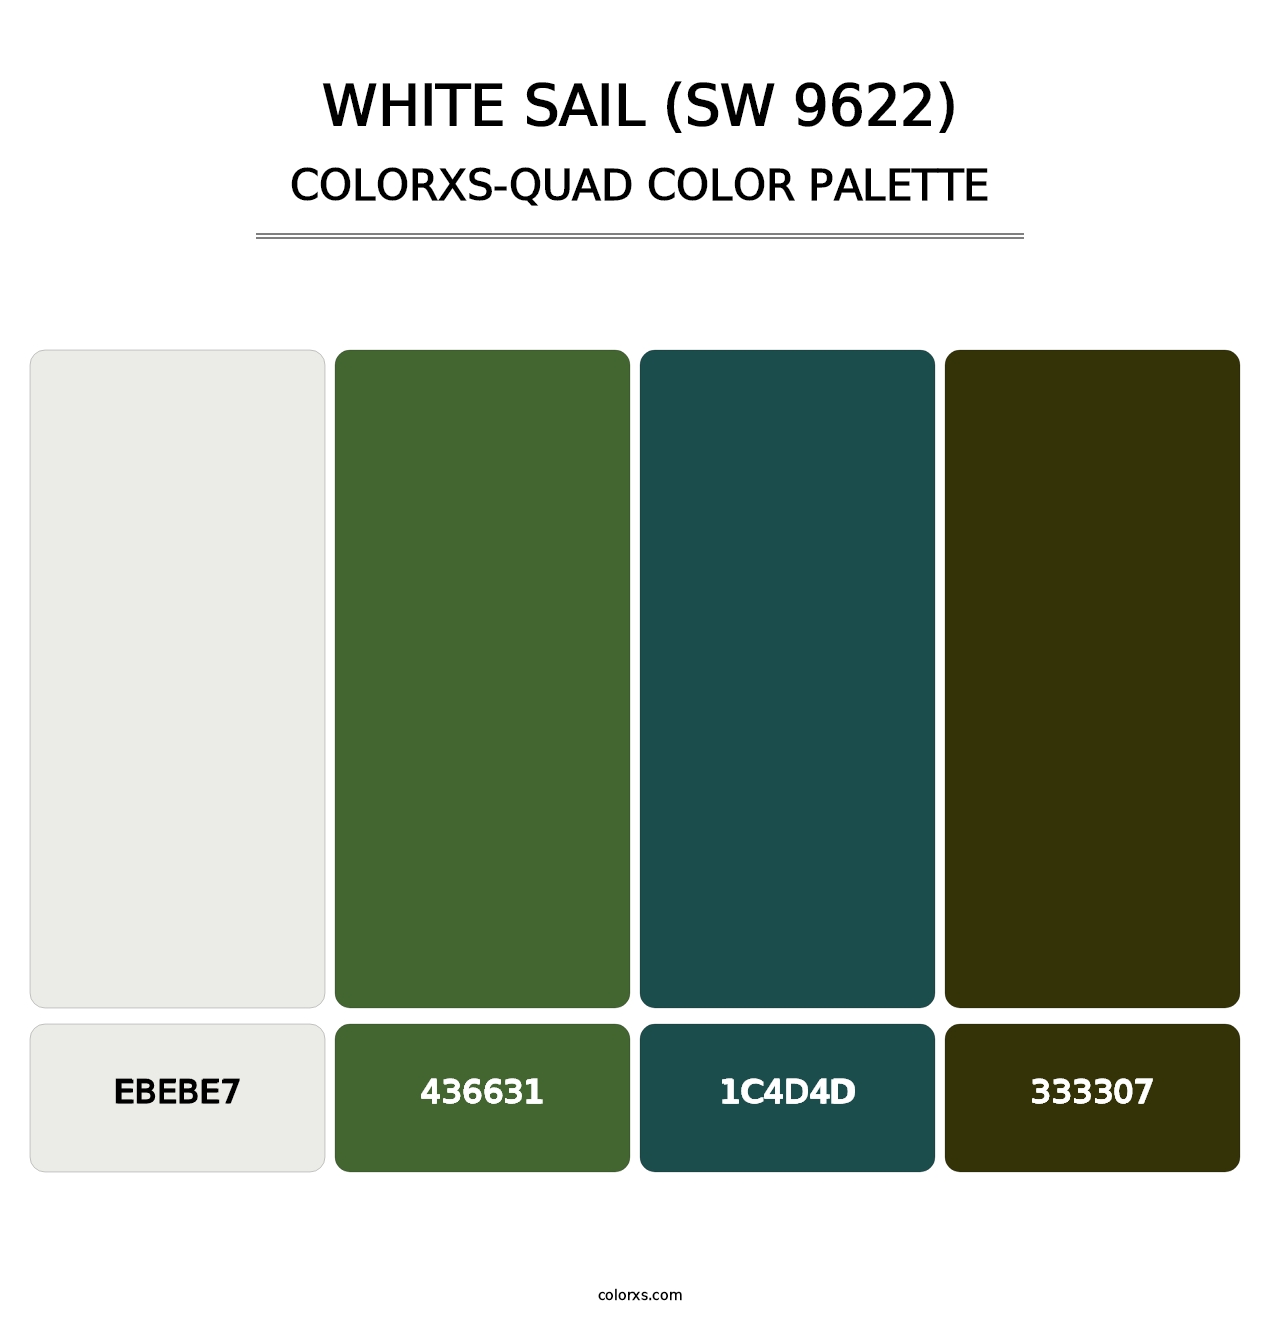 White Sail (SW 9622) - Colorxs Quad Palette